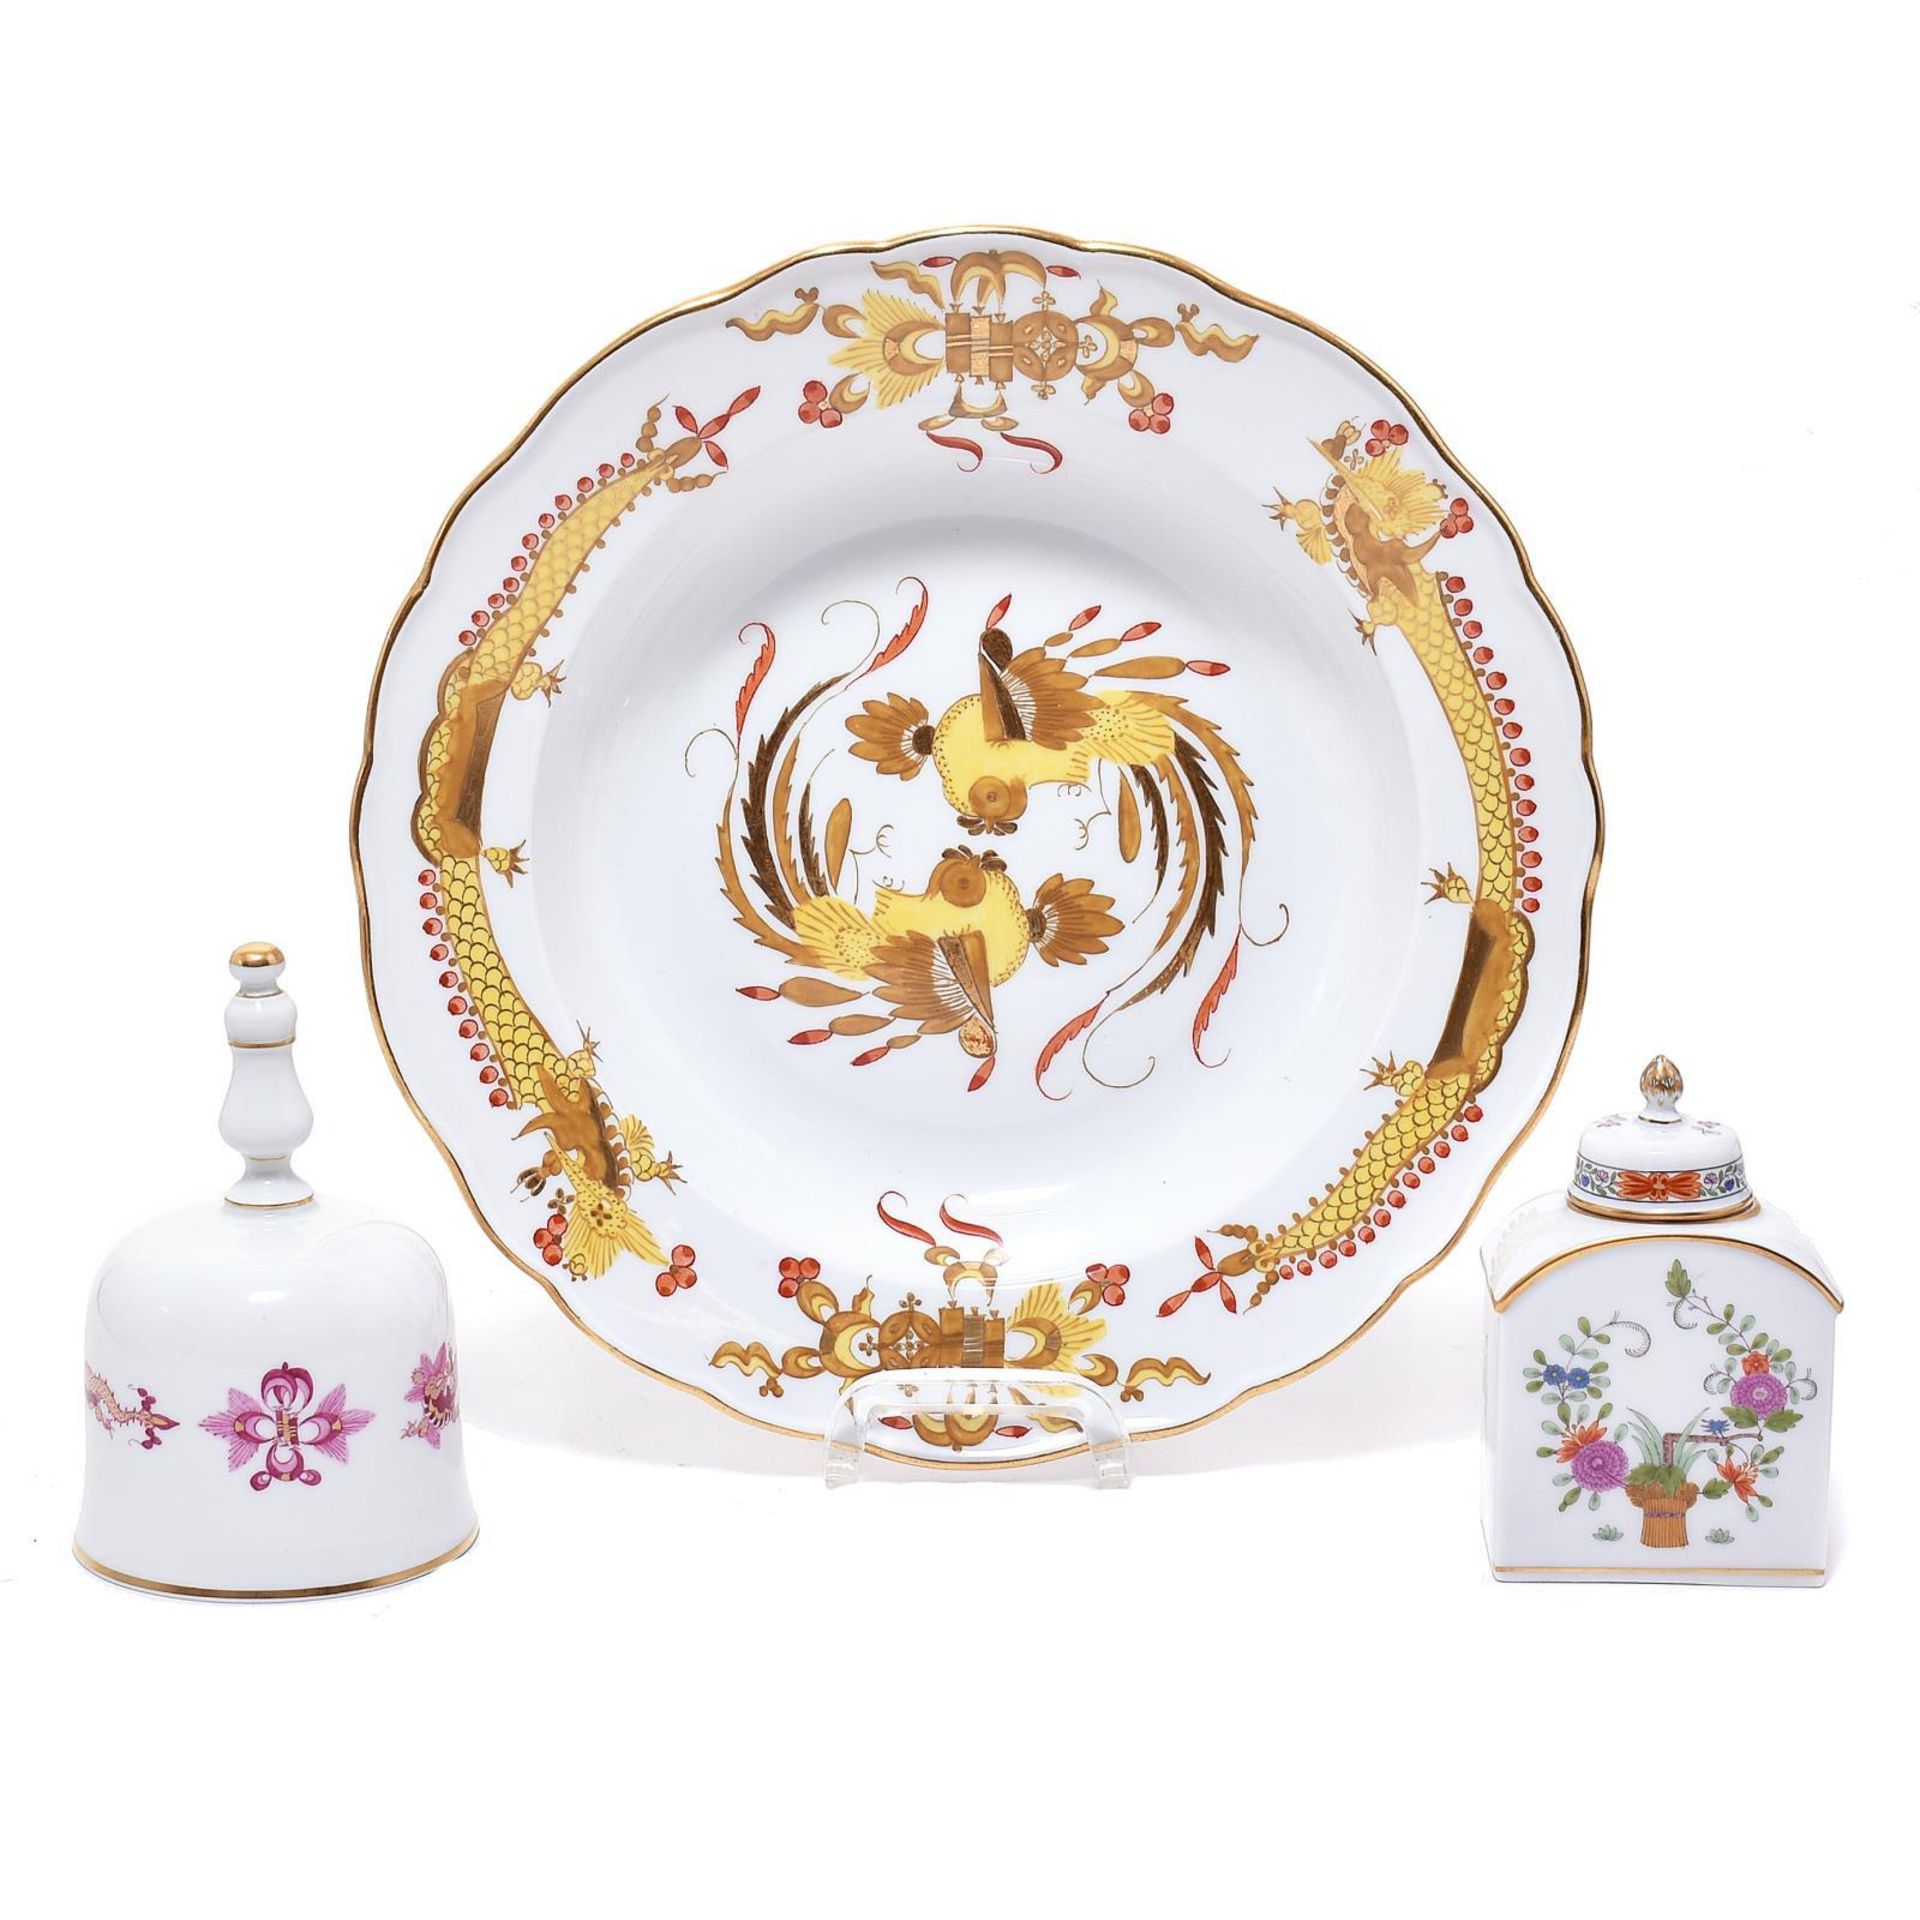 Teedose, Tischglocke und Suppenteller. Meissen | Porzellan, Farb- und Goldstaffagen.